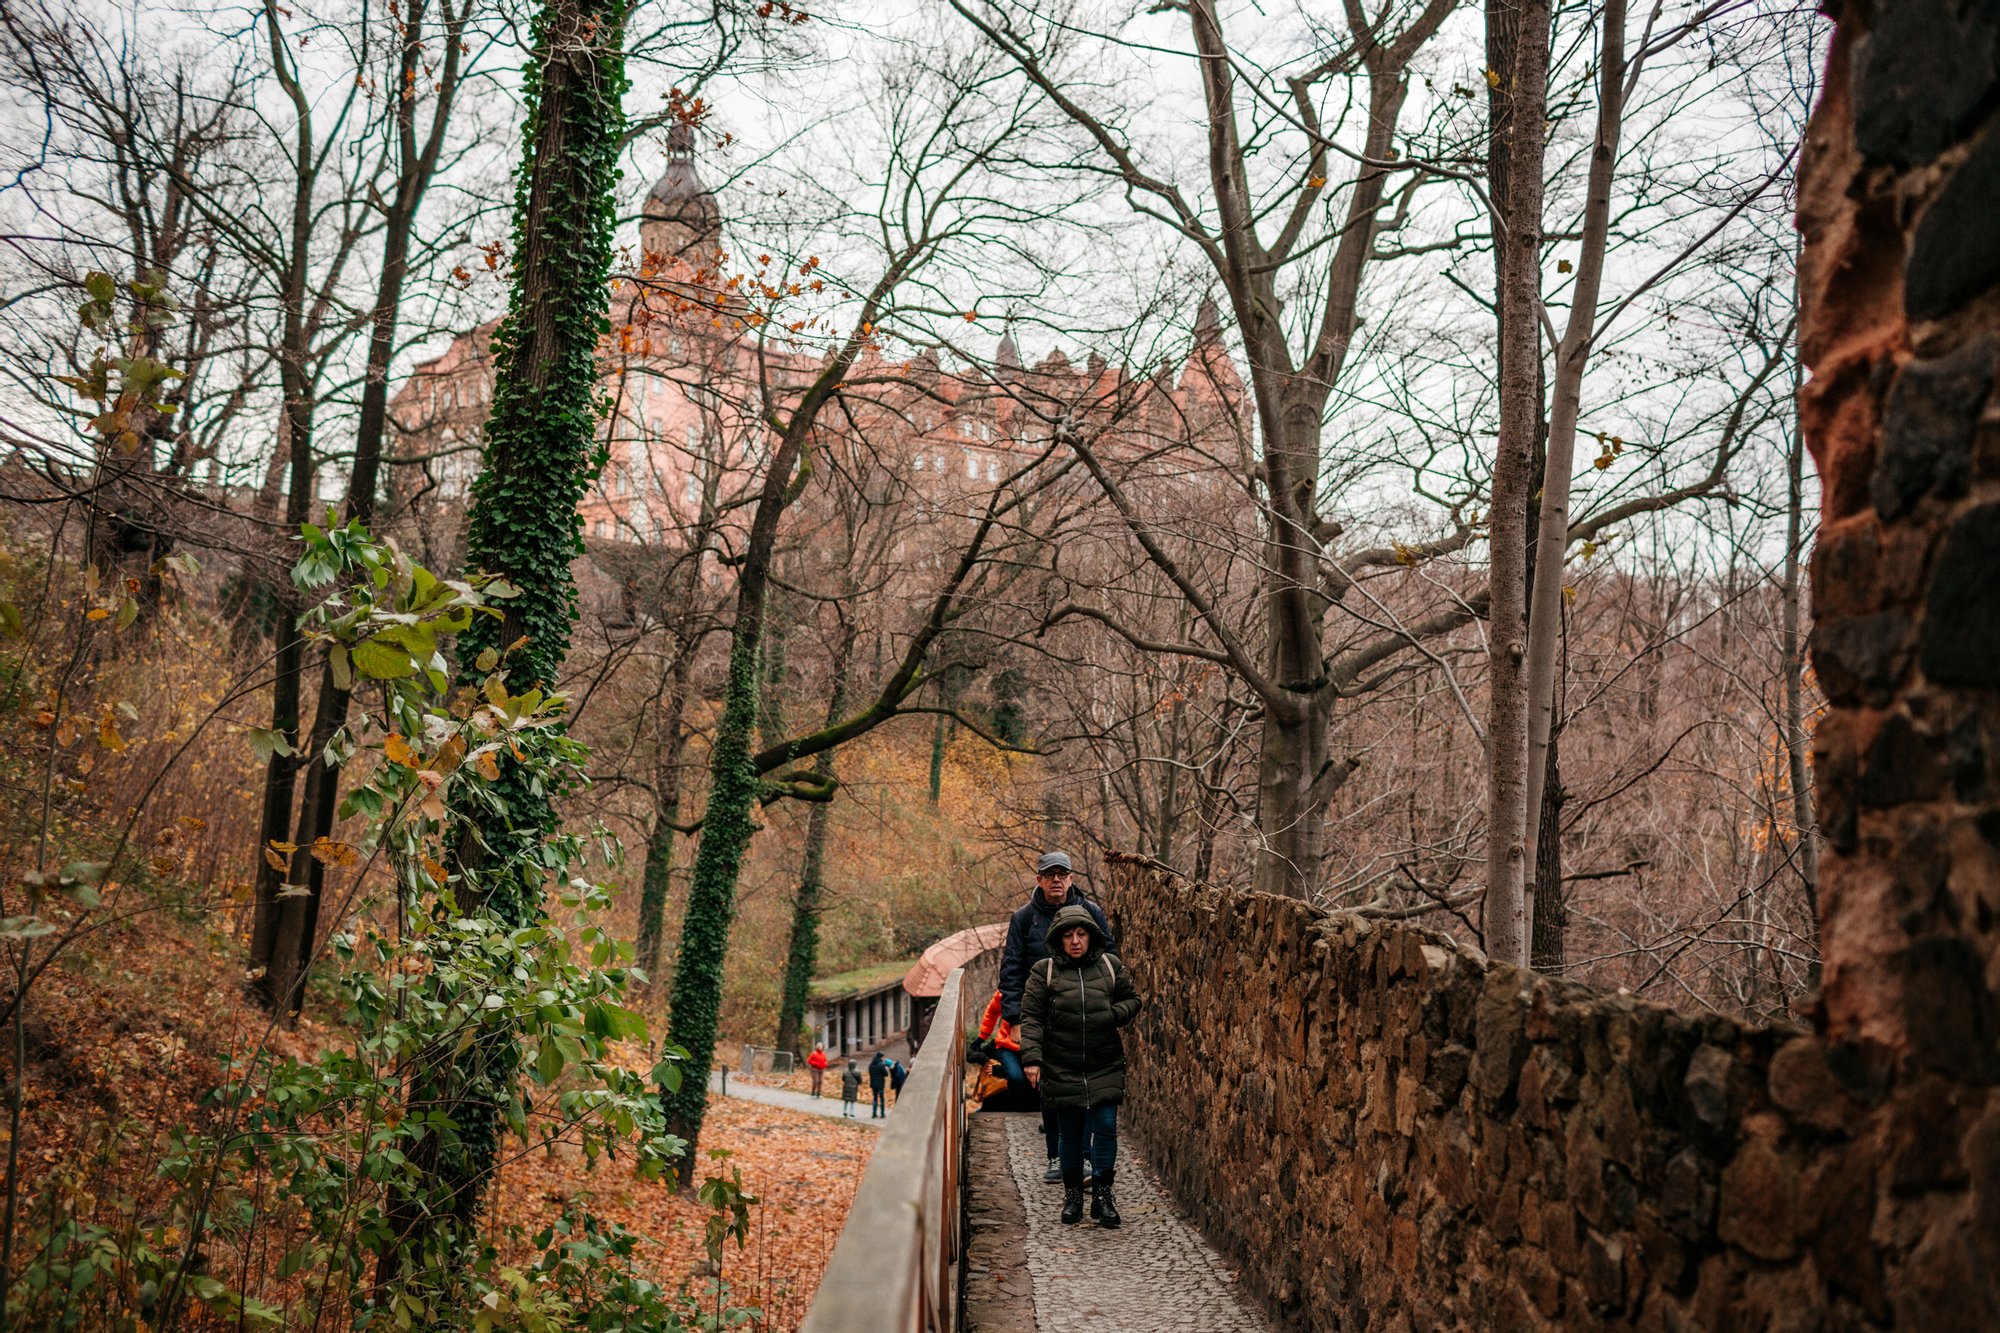 Kolorowa, pozioma fotografia: grupa seniorów i seniorek słucha spaceruje po parku wokół Zamku Książ. W tle między drzewami widoczny jest zamek.